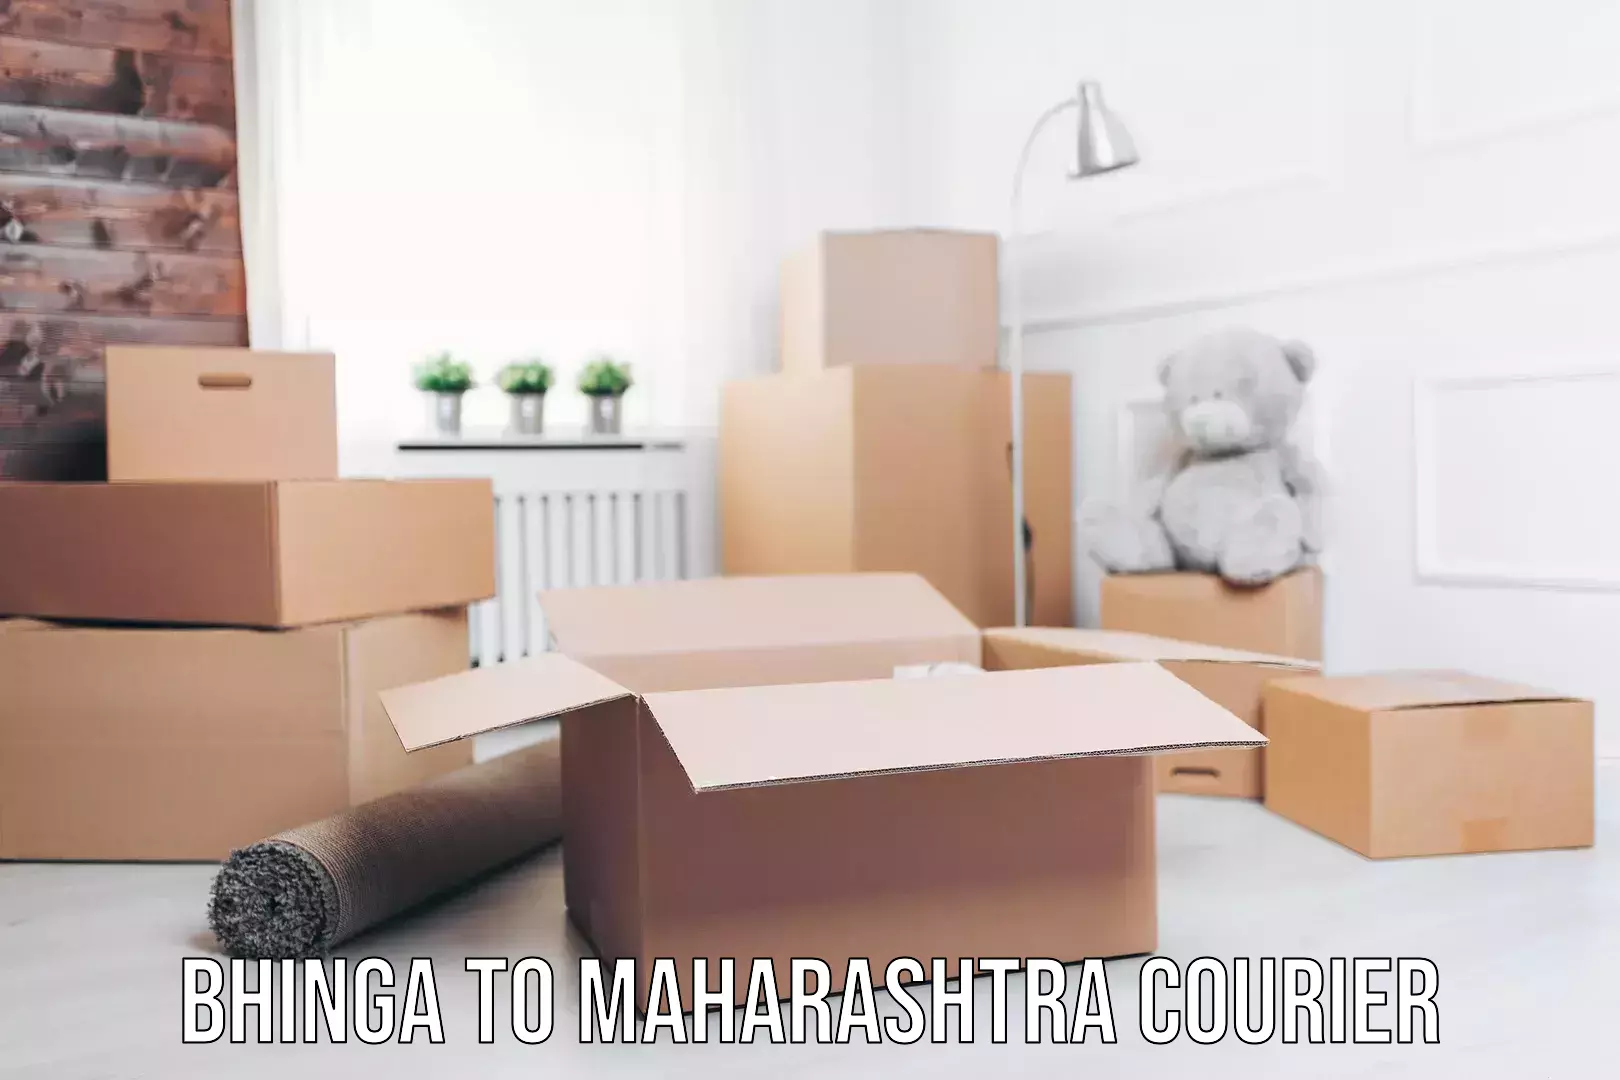 Enhanced delivery experience Bhinga to Maharashtra